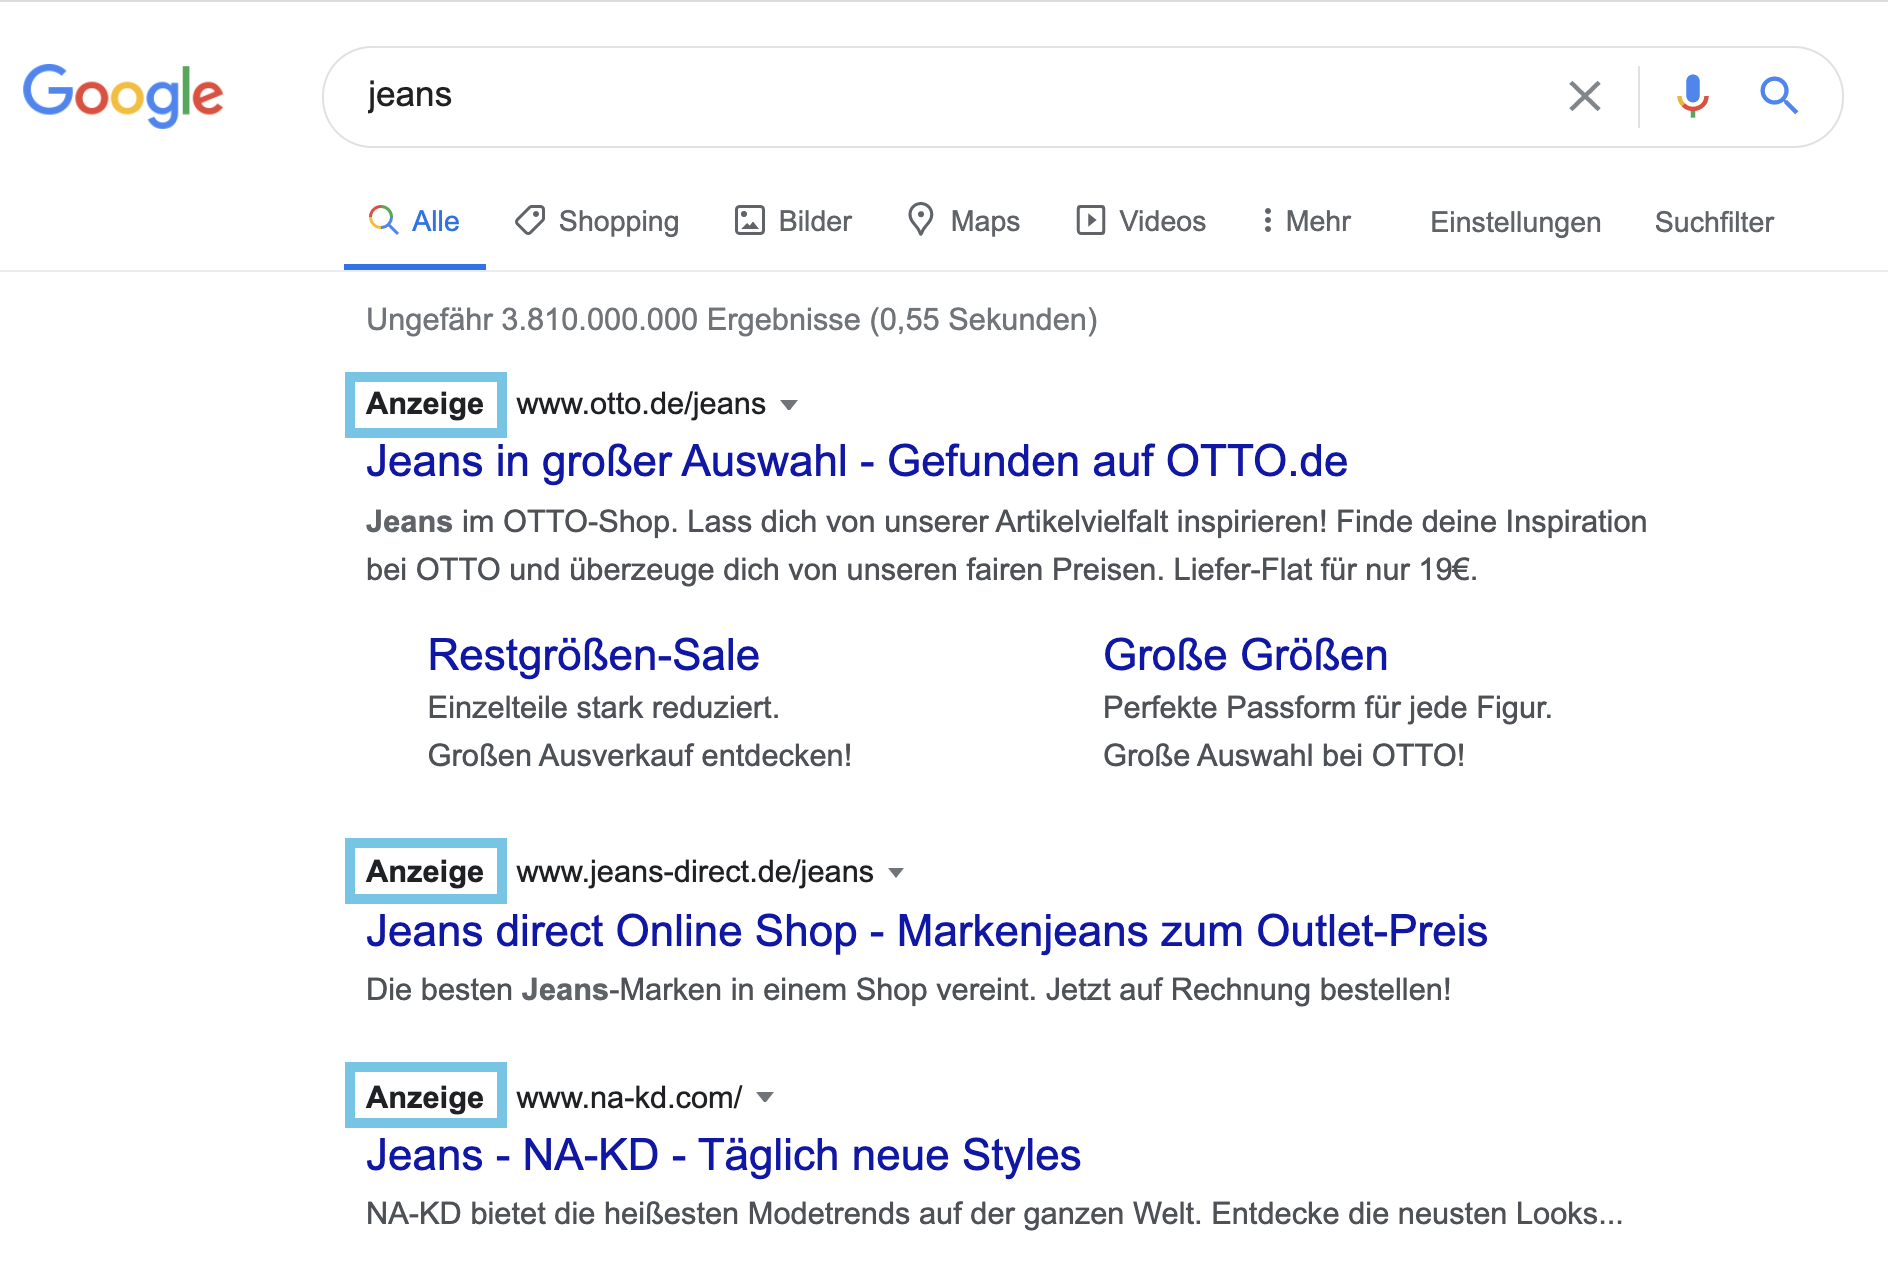 Auf dem Bild zu sehen ist der Screenshot einer Google Suchanfrage nach dem Schlagwort "Jeans". Die ersten Ergebnisse der SERP zeigt ganz oben unterhalb der Suchleiste direkt bezahlte Werbeanzeigen, die mit dem fettgedruckten Wort "Anzeige" (im Screenshot blau umrahmt) gekennzeichnet sind.